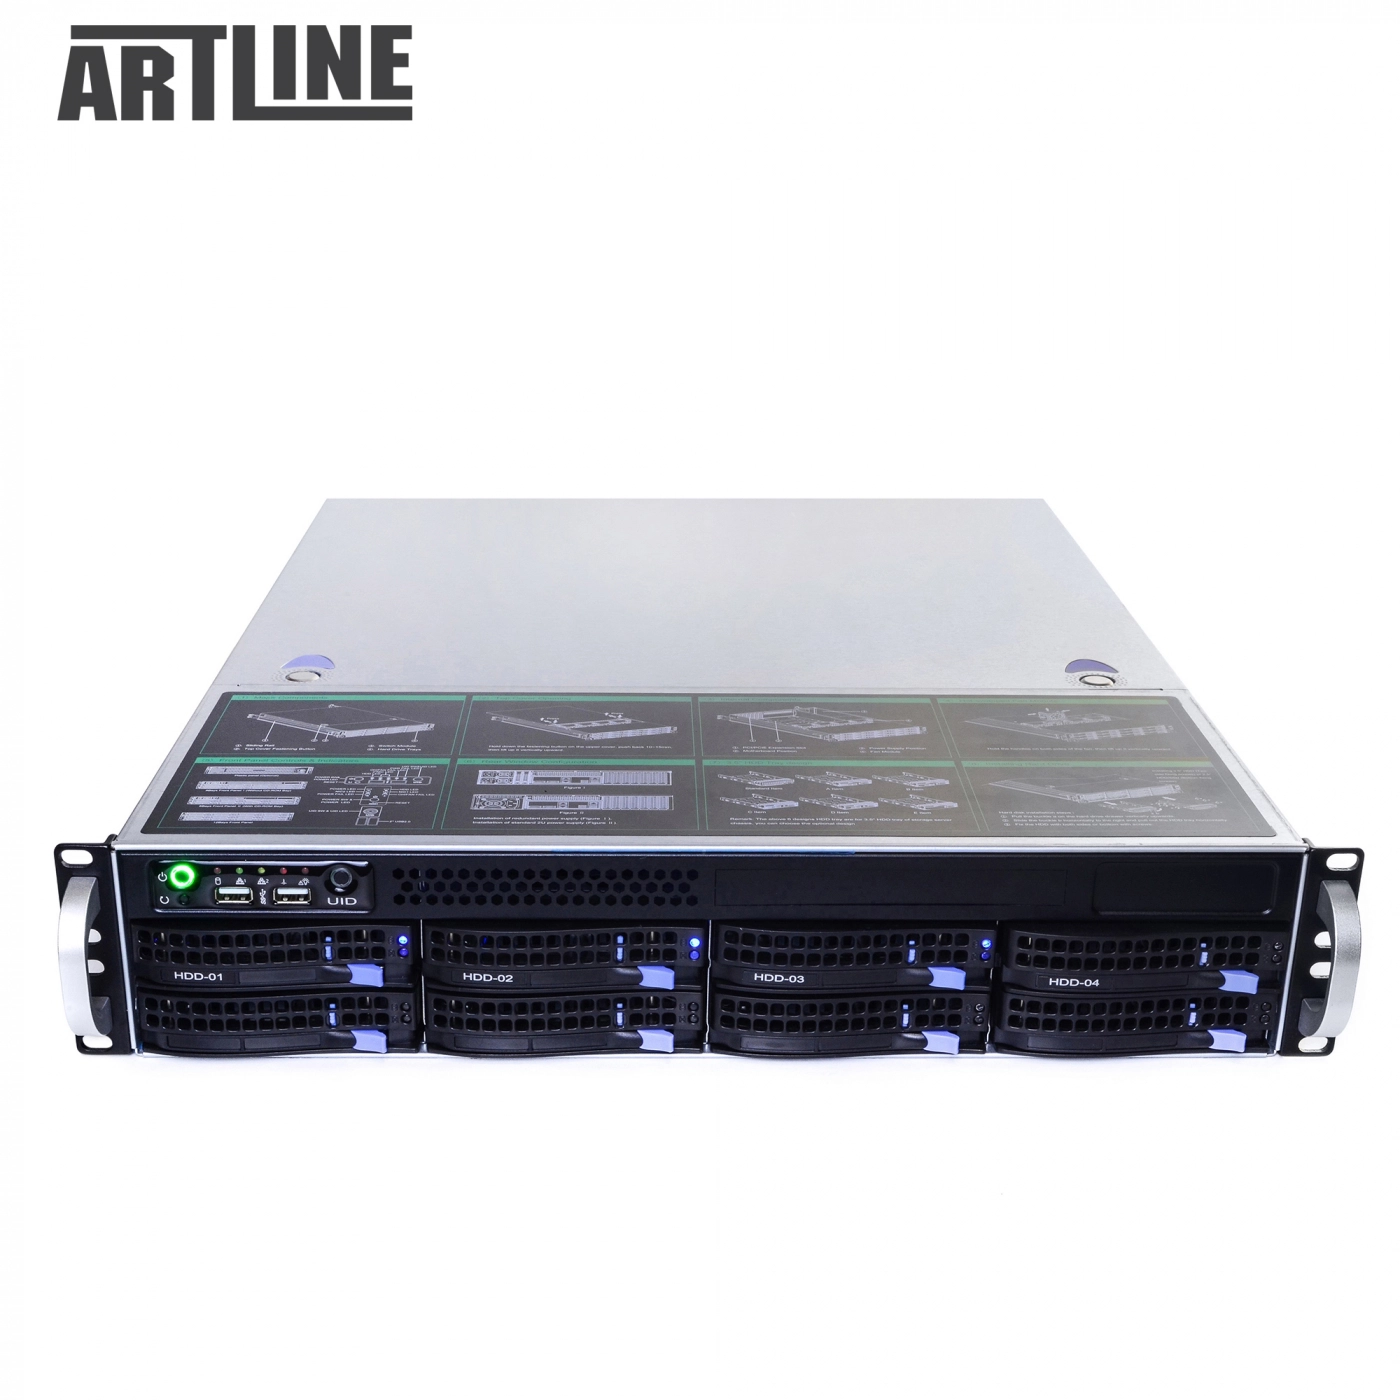 Купить Сервер ARTLINE Business R81v07 - фото 9